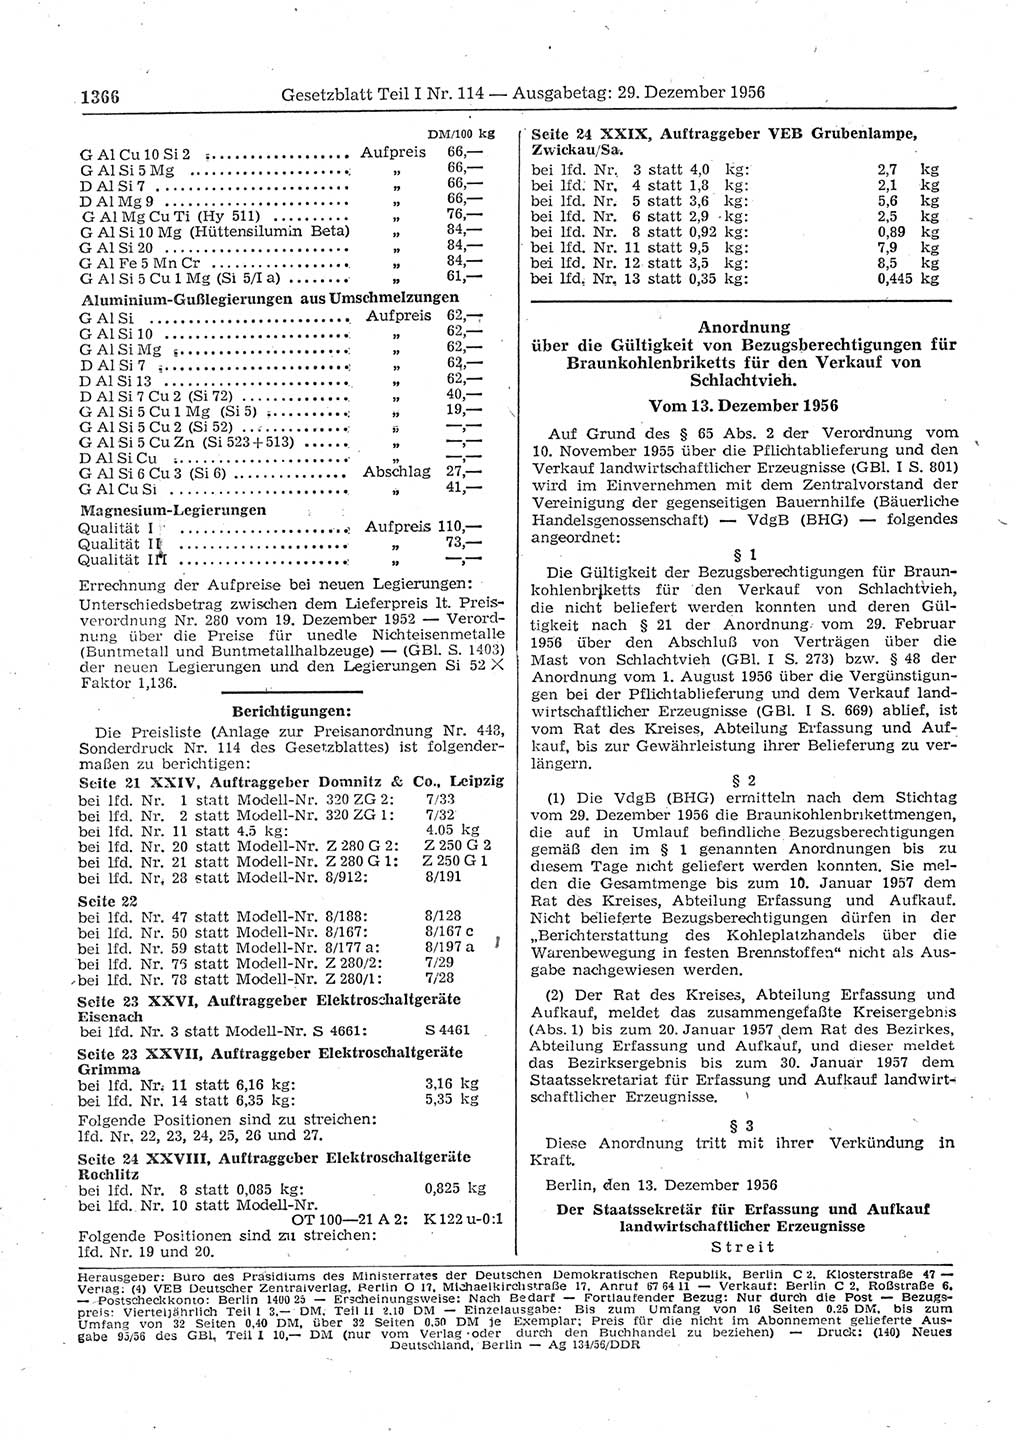 Gesetzblatt (GBl.) der Deutschen Demokratischen Republik (DDR) Teil Ⅰ 1956, Seite 1366 (GBl. DDR Ⅰ 1956, S. 1366)